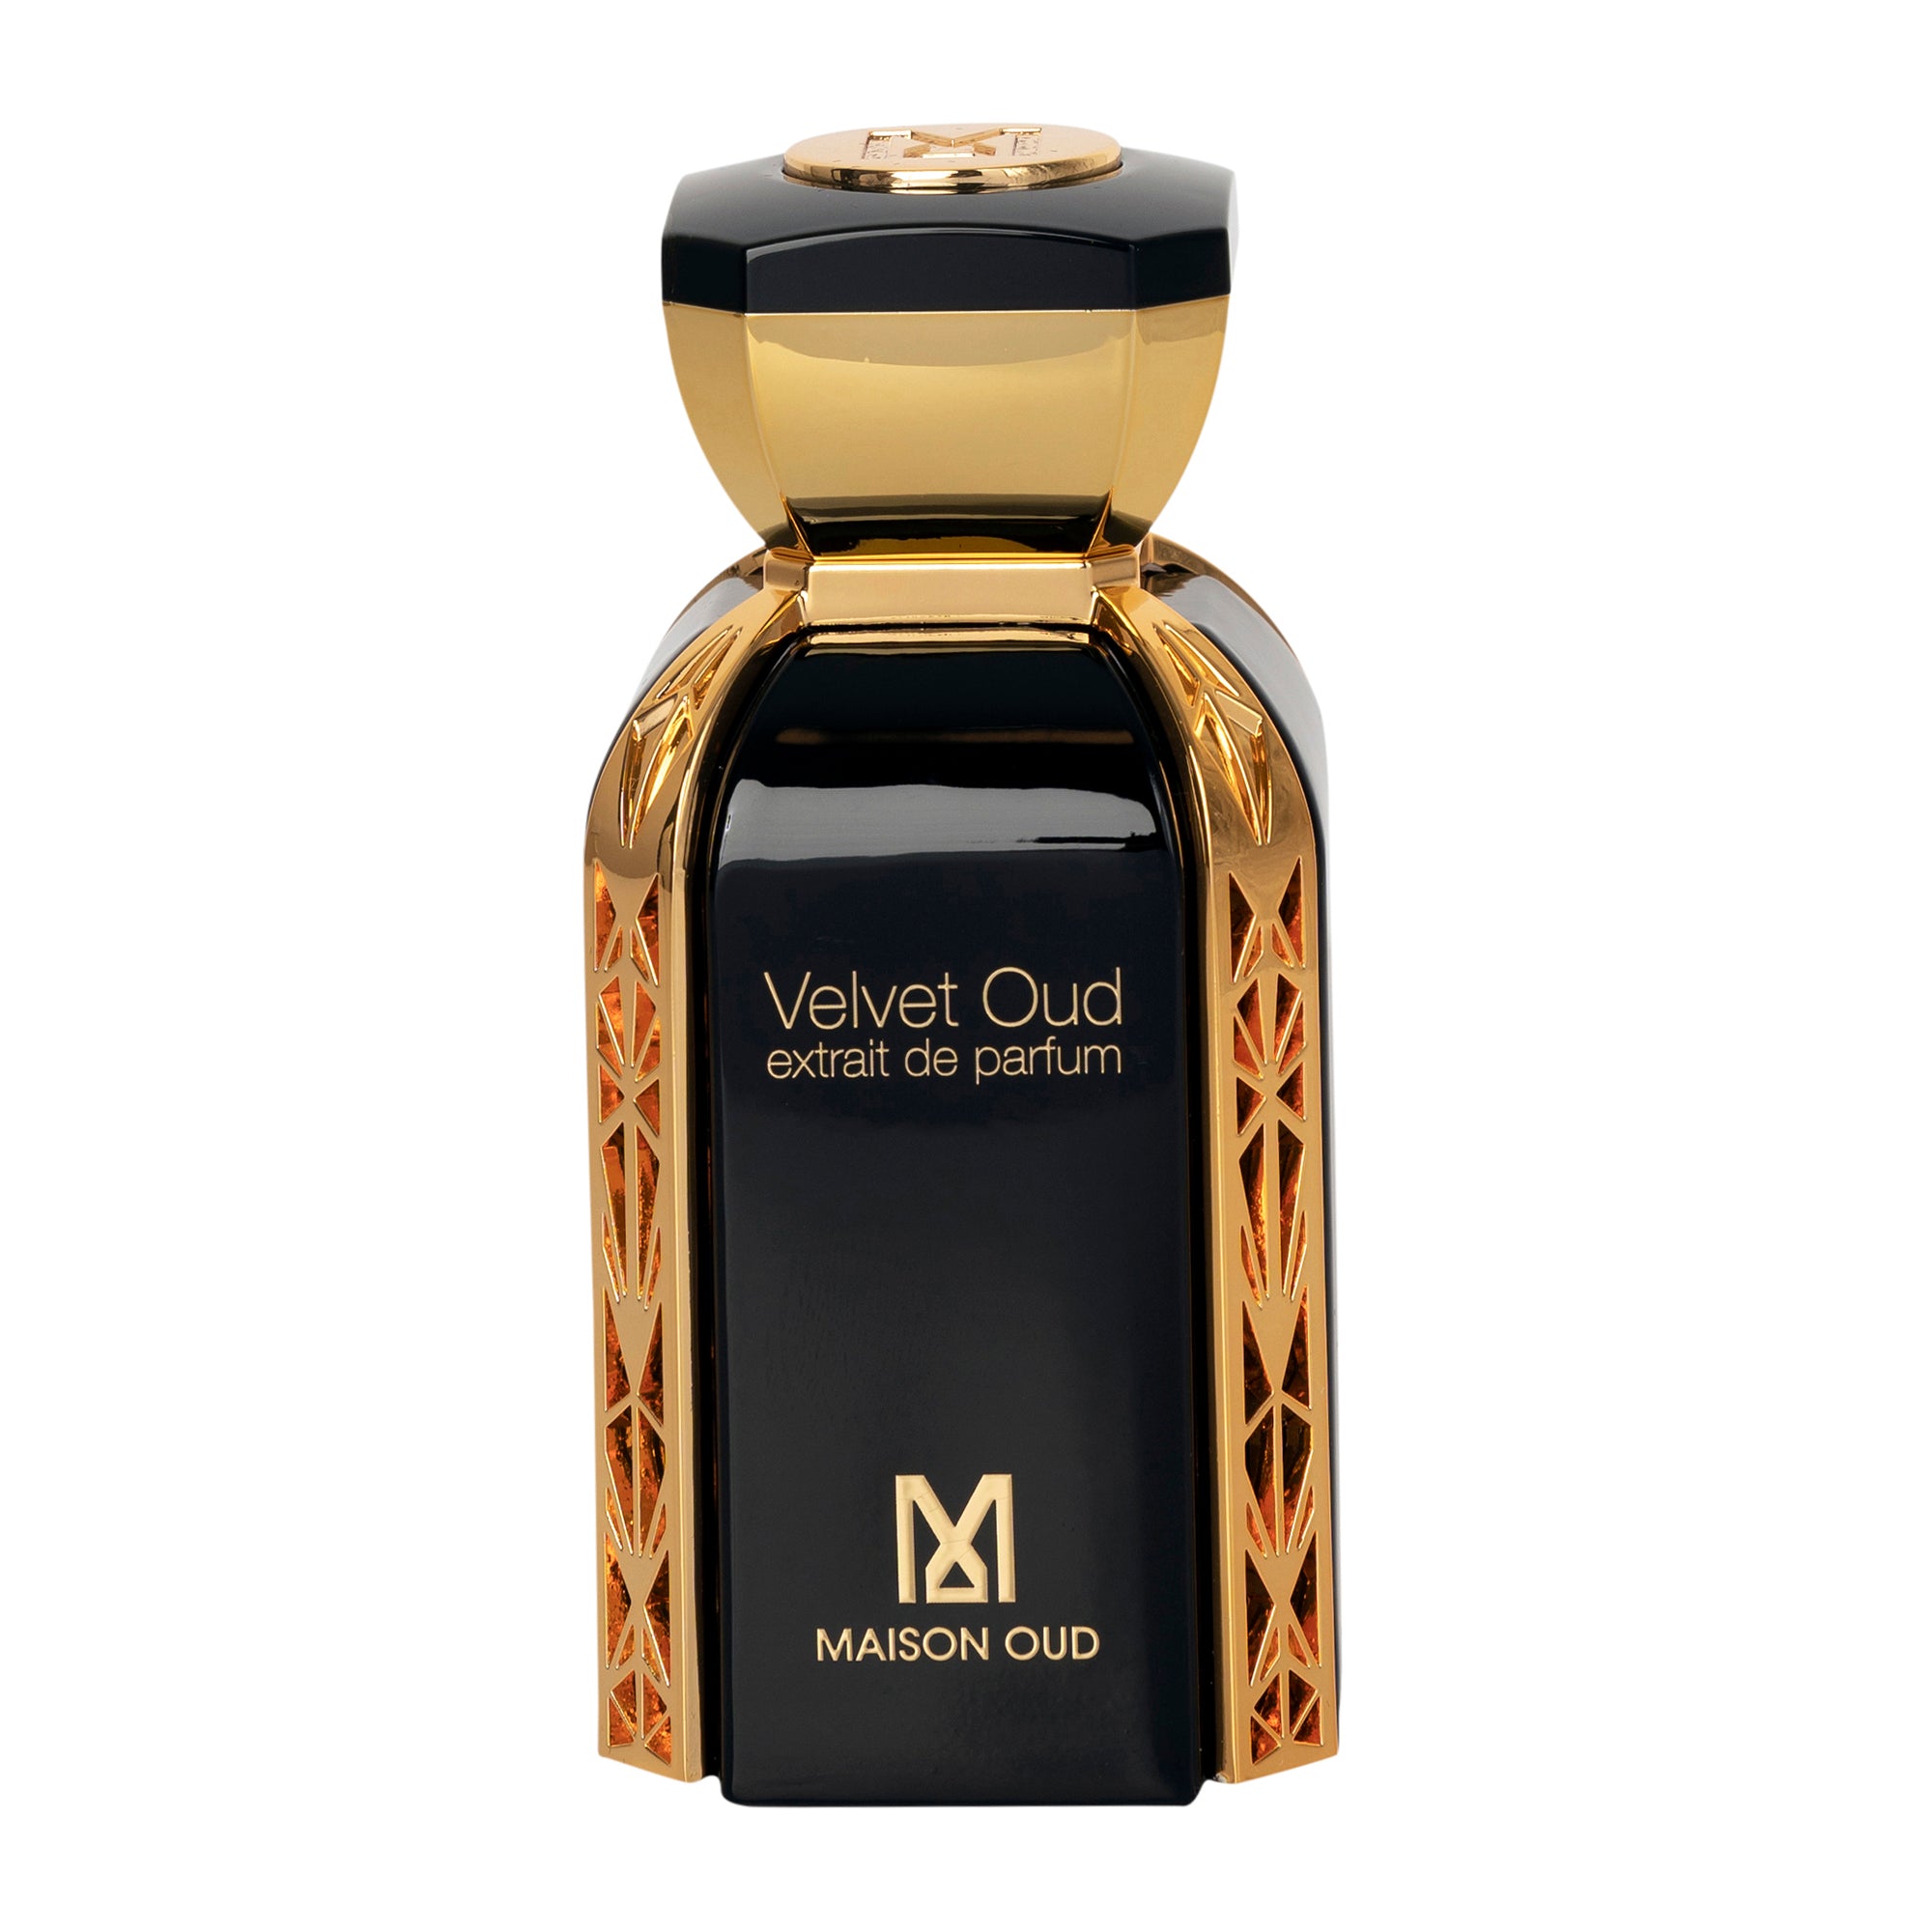 Maison Oud Velvet Oud Extrait De Parfum 75ml